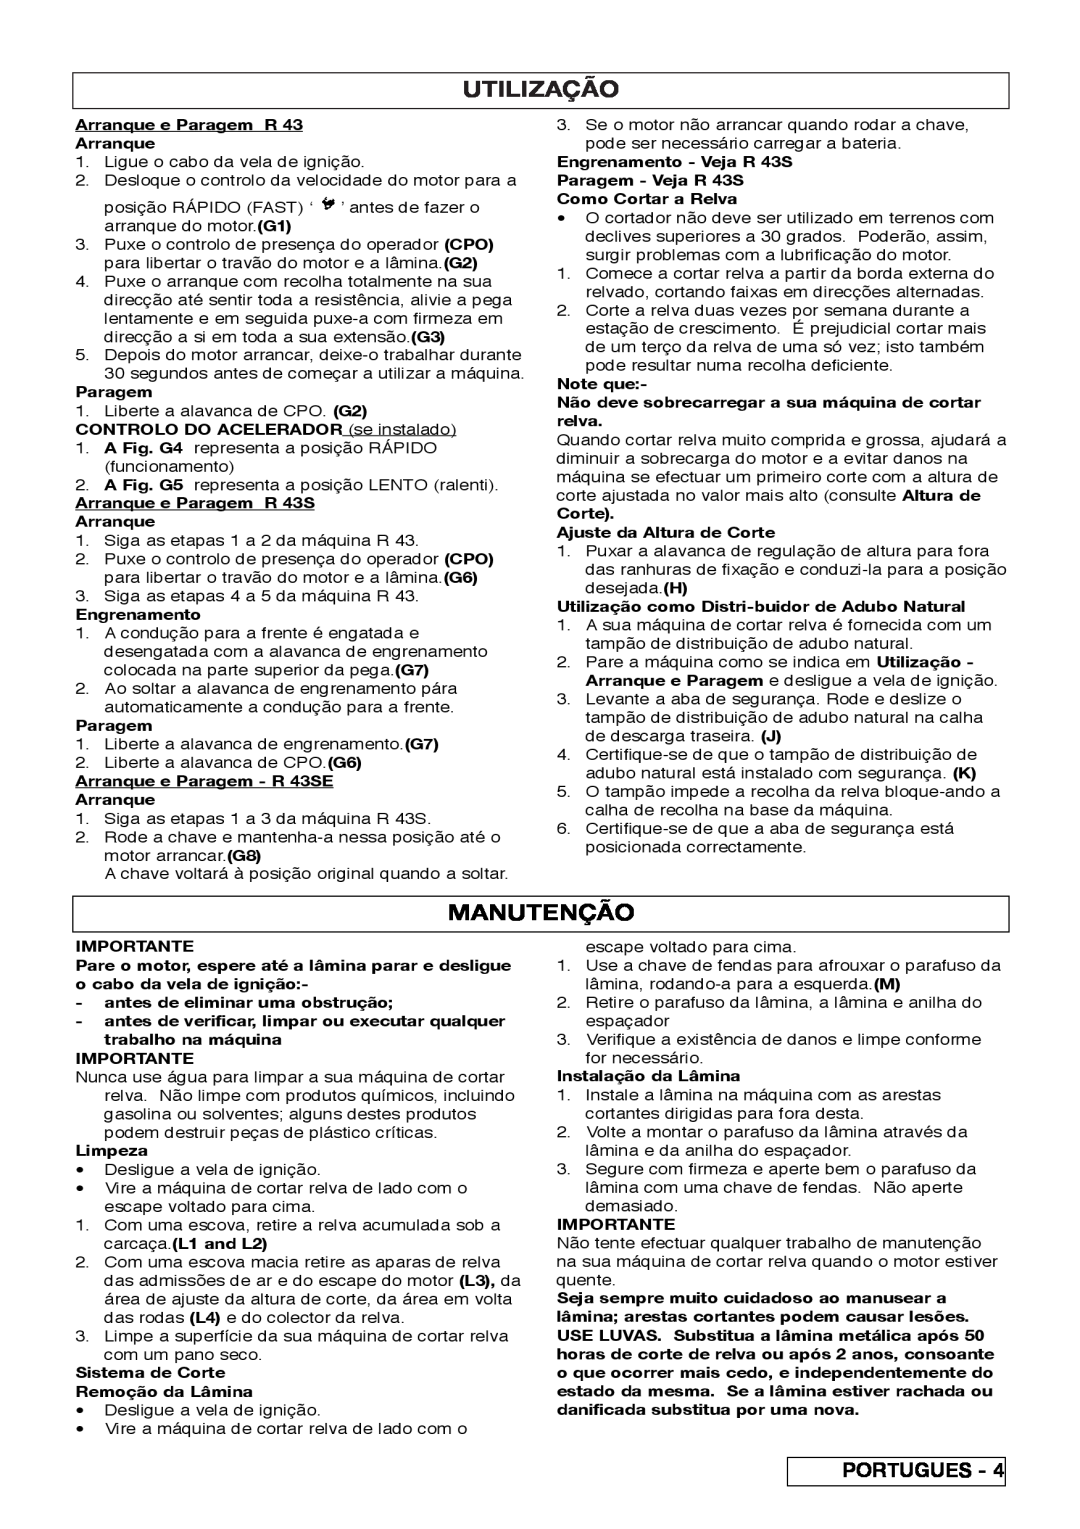 Husqvarna R 43SE manual Utilização, Manutenção 